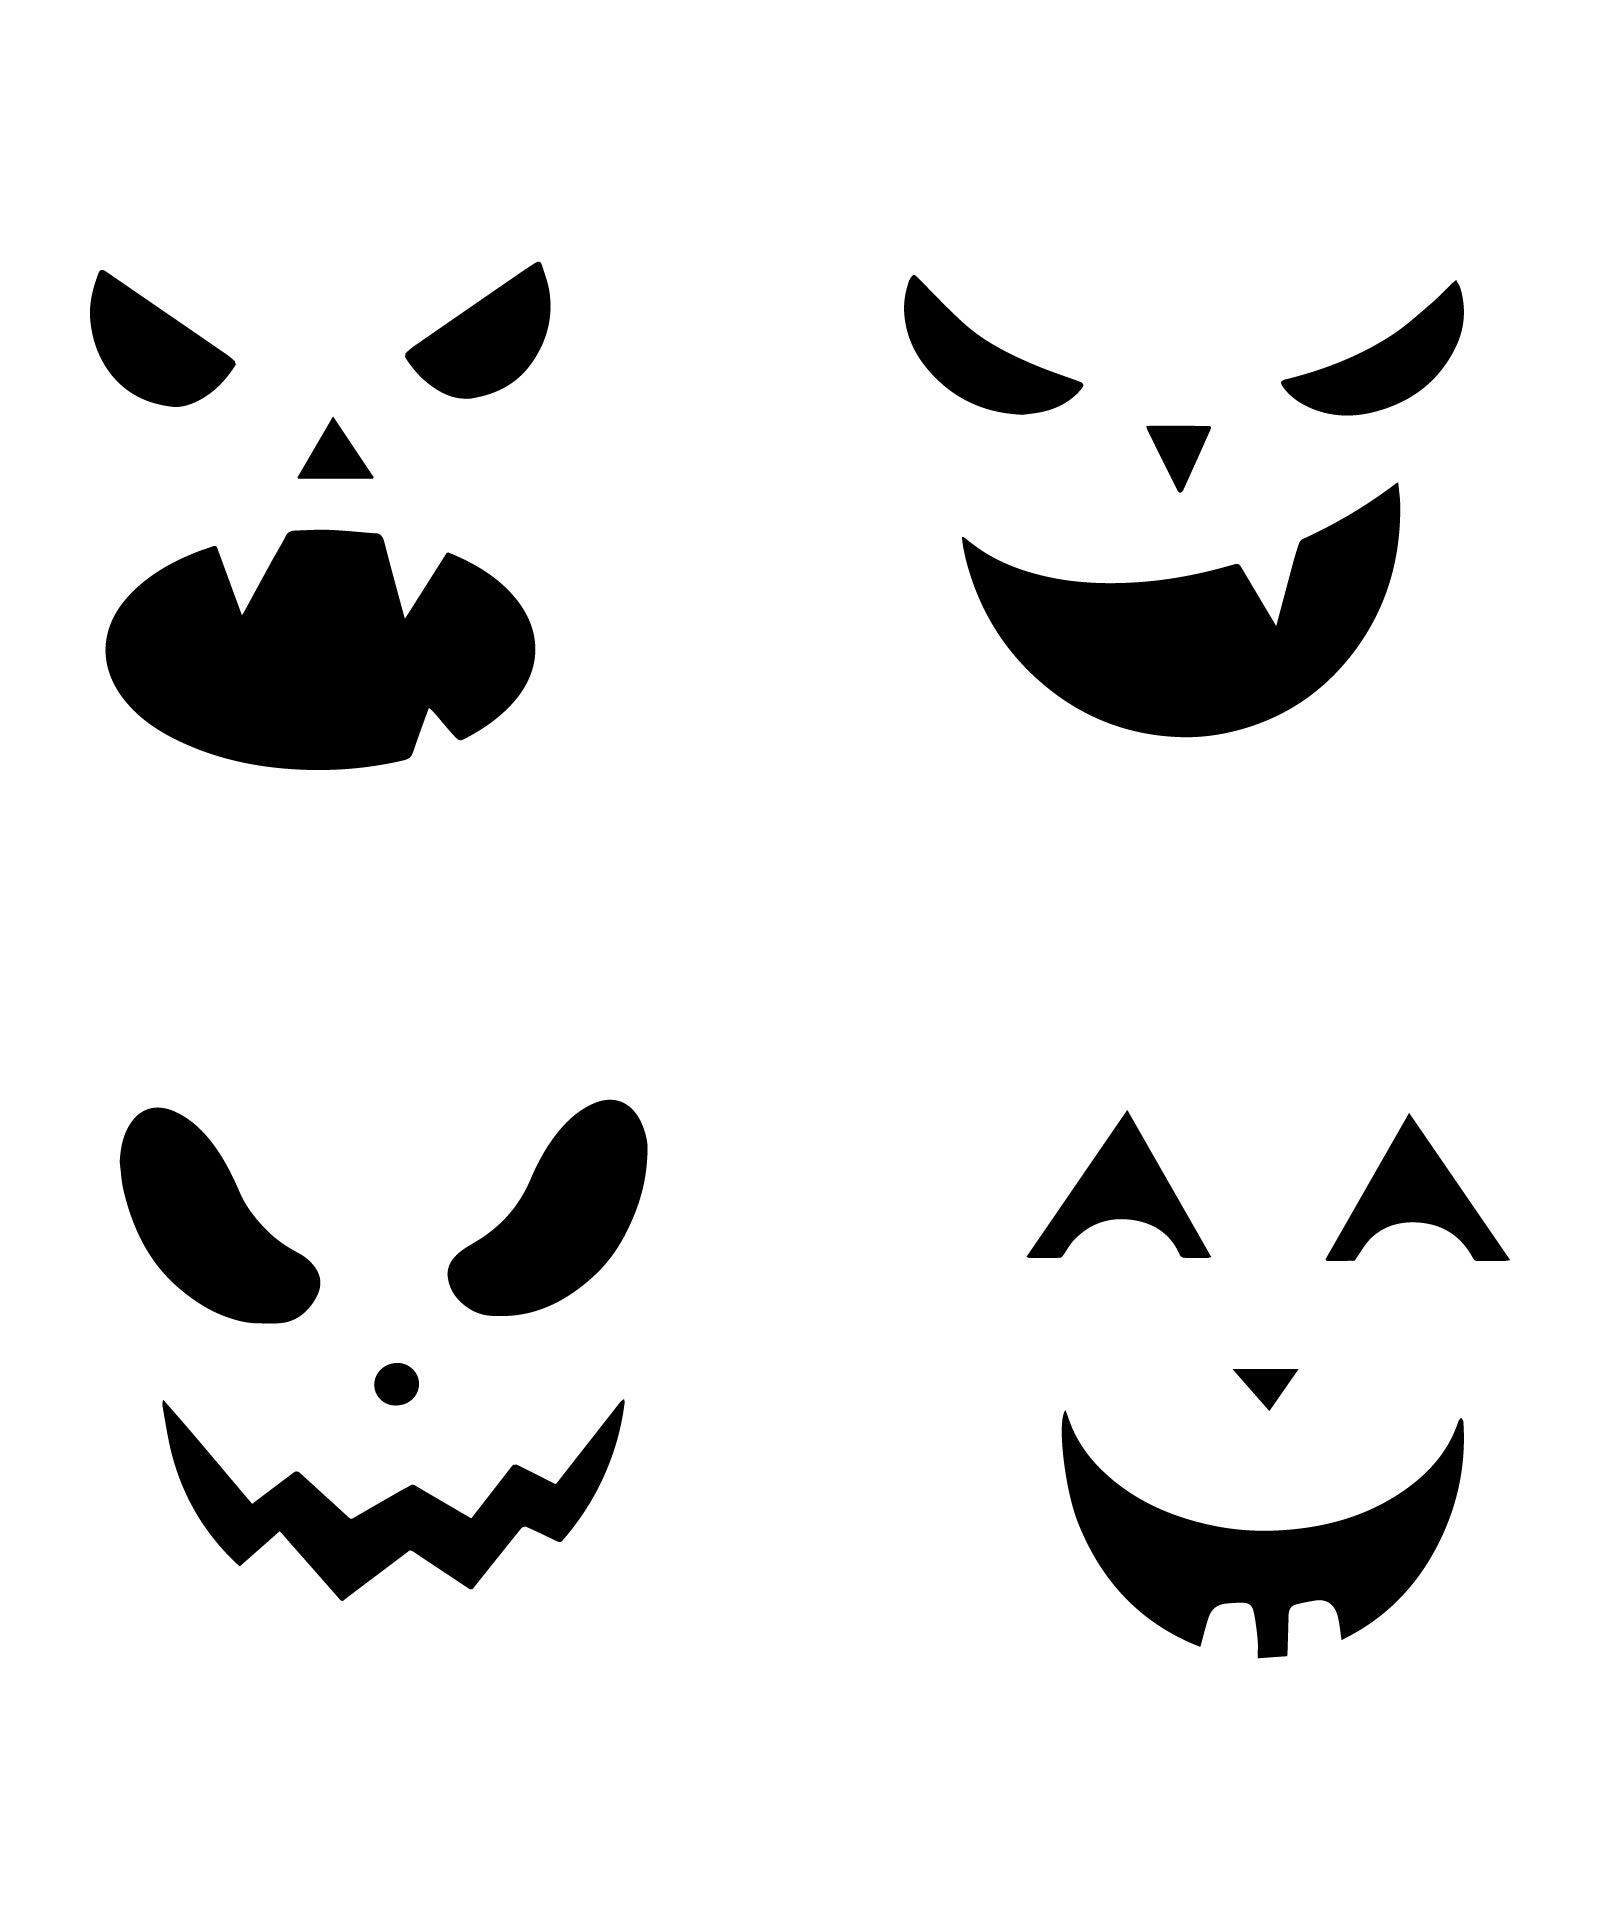 10 Best Free Printable Pumpkin Stencils PDF for Free at Printablee